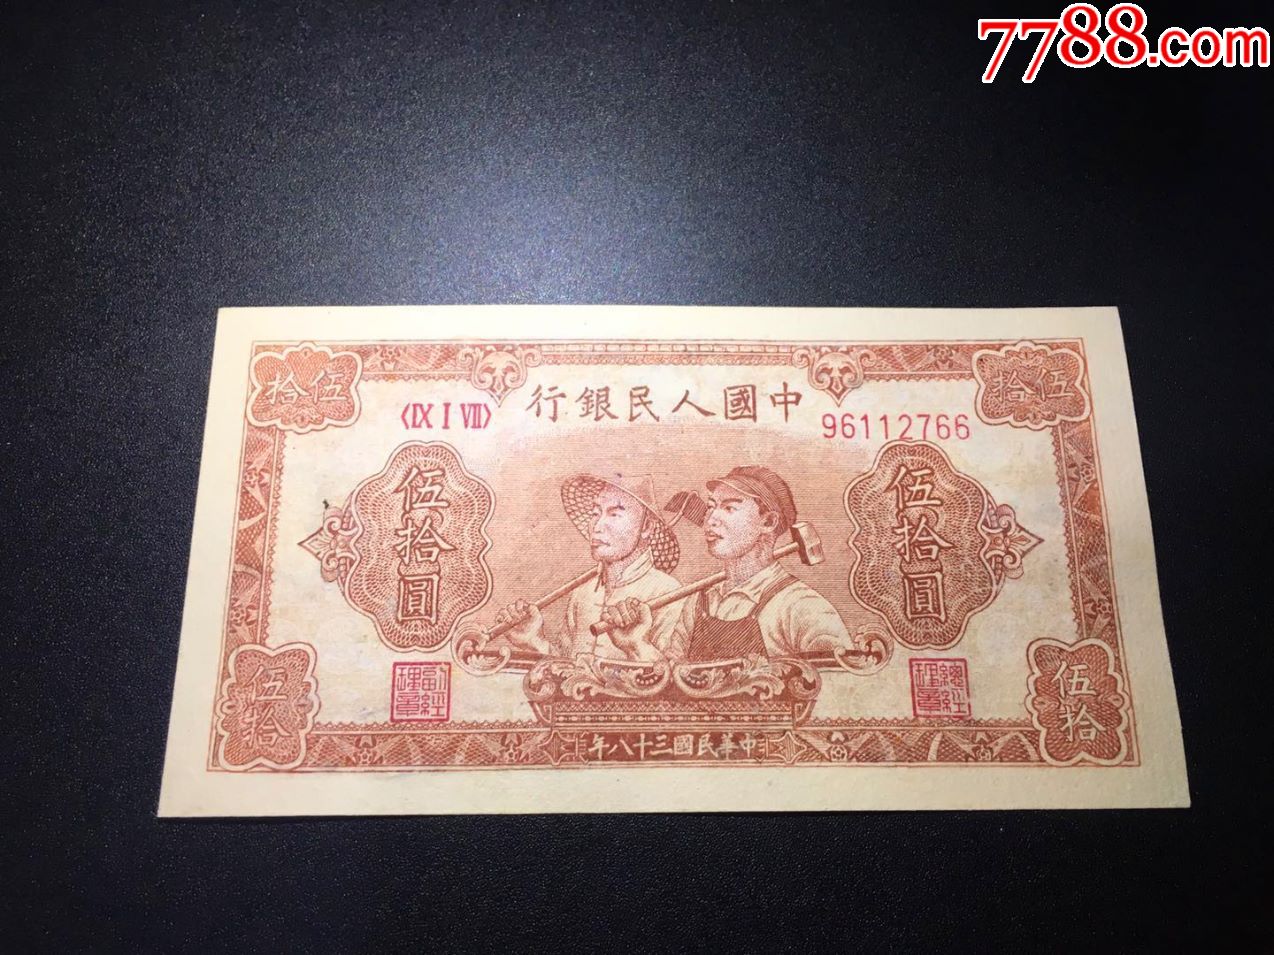 第一版人民币五十元(工农)